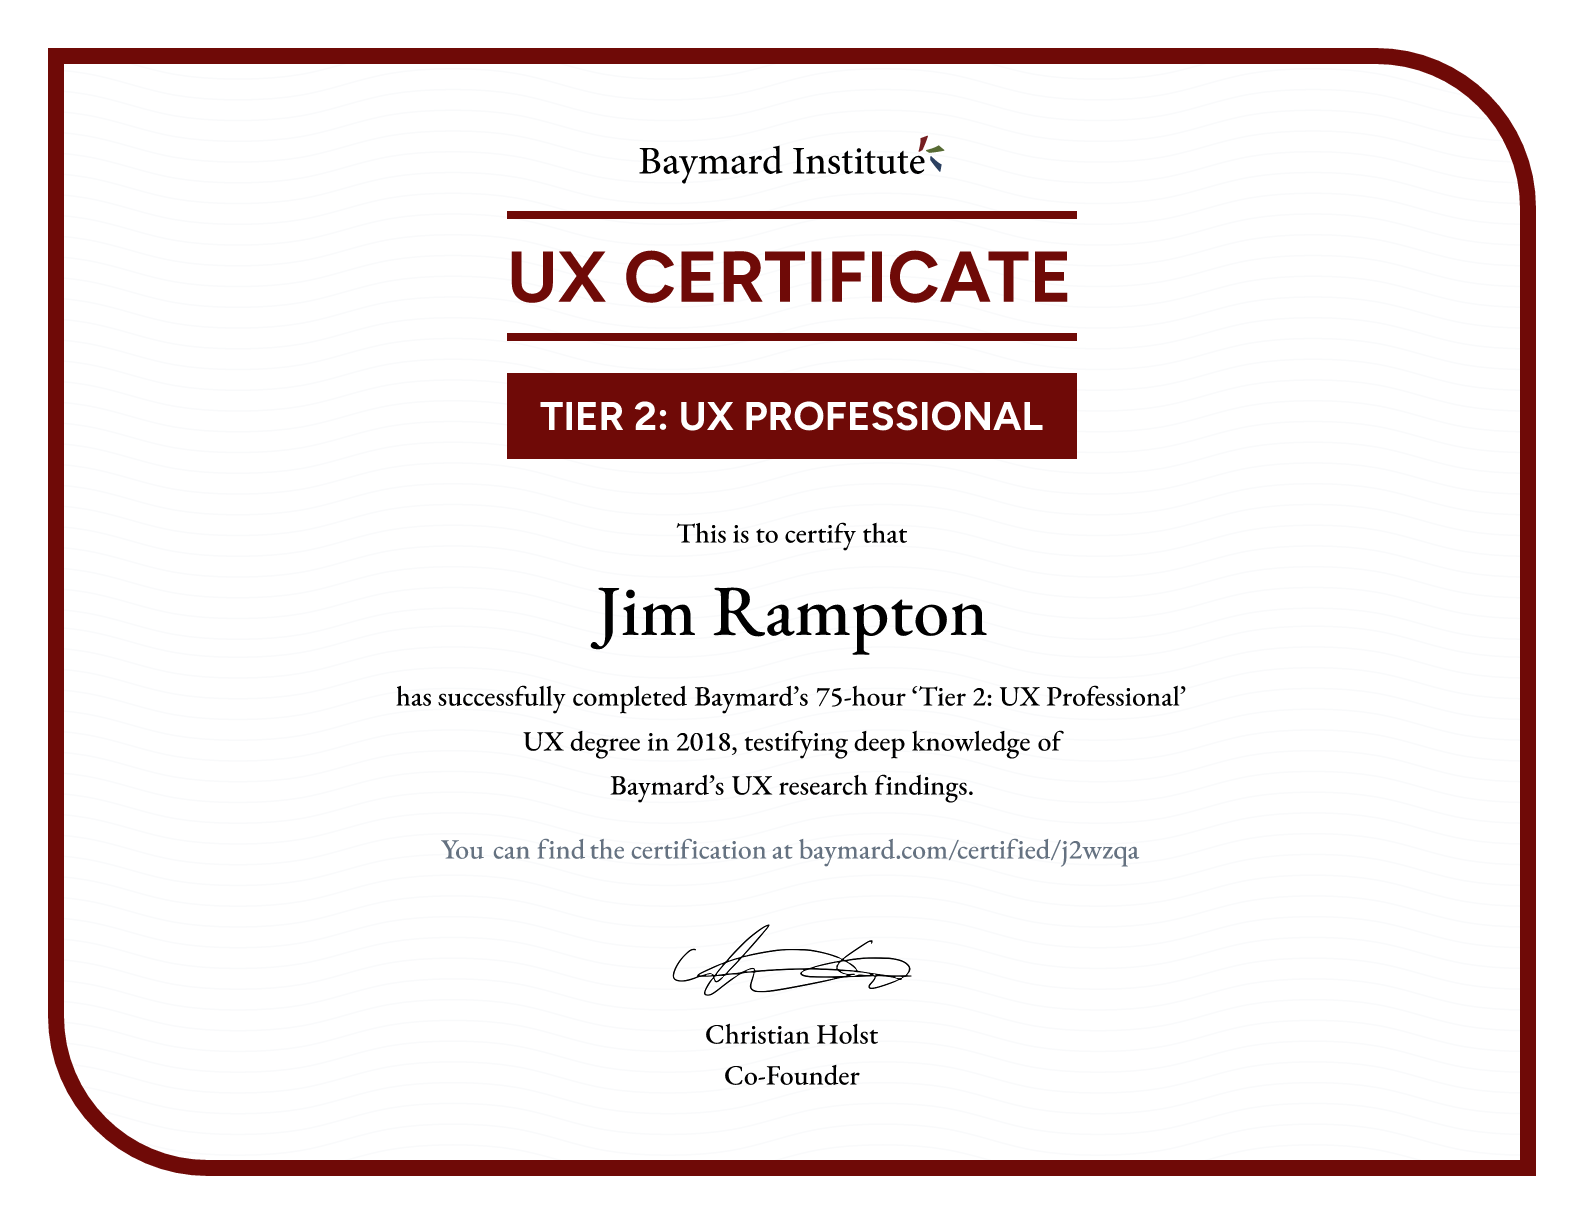 Jim Rampton’s certificate